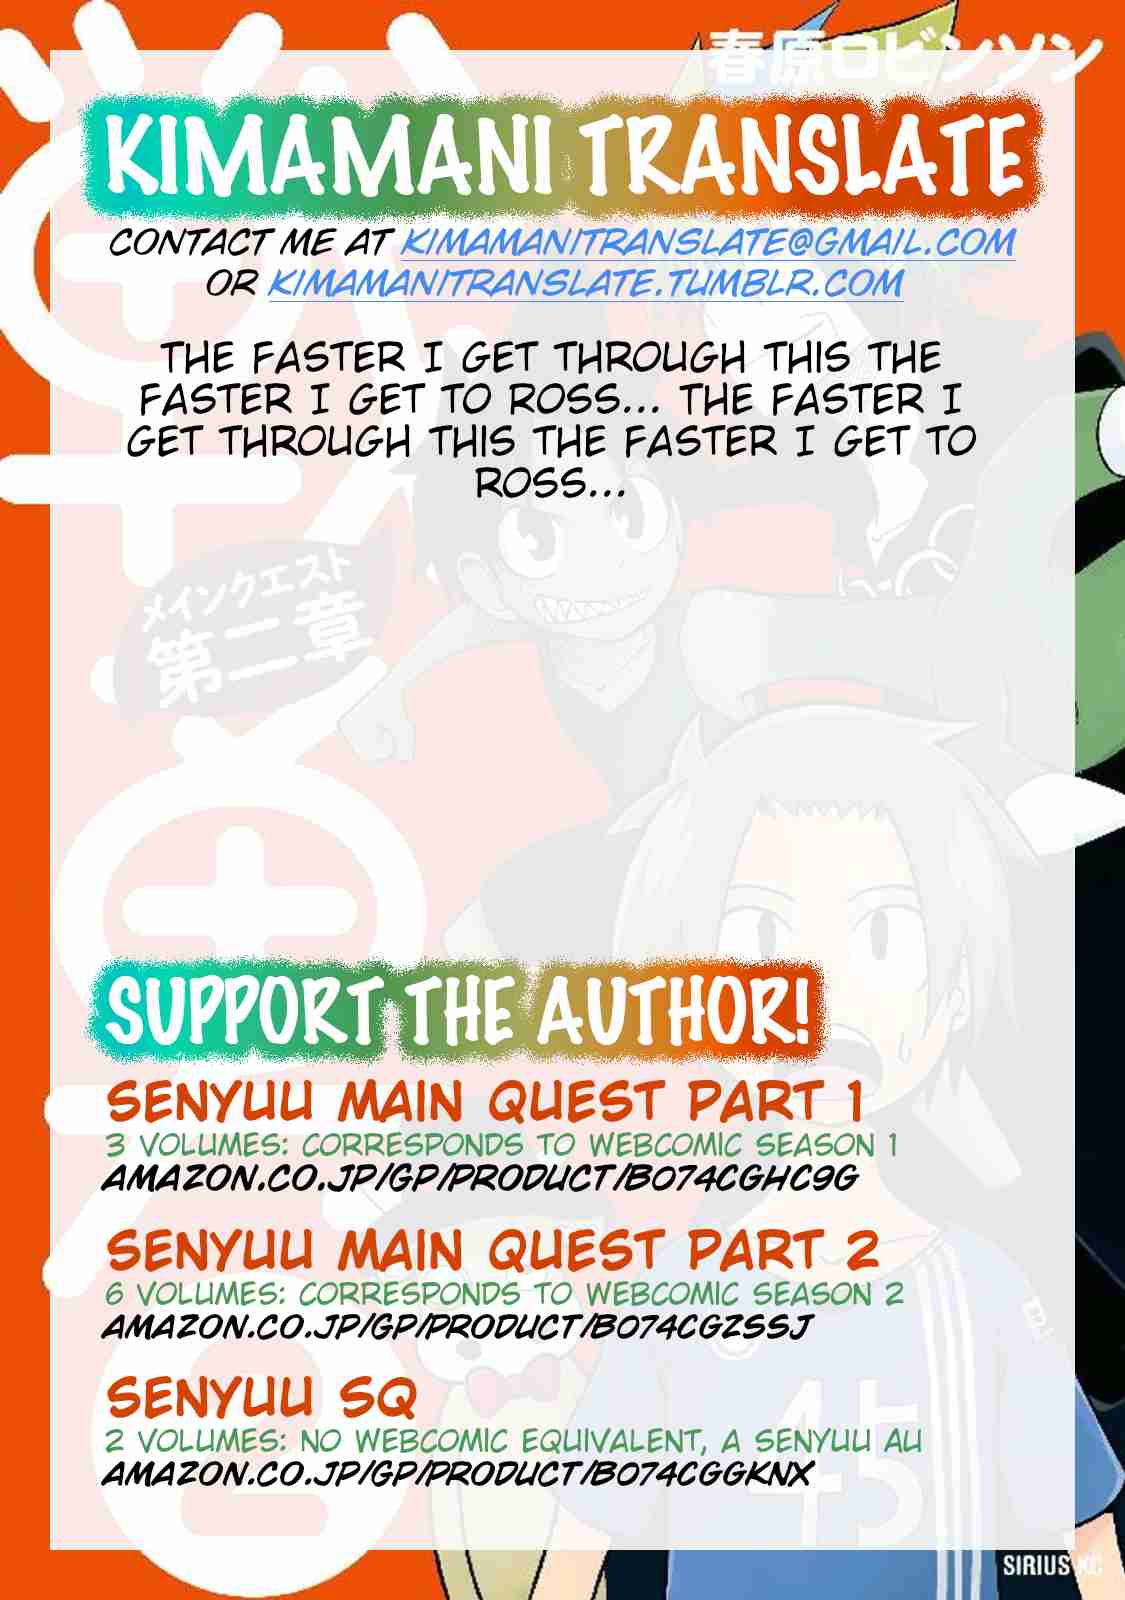 Senyuu. Main Quest Part 2 Vol. 2 Ch. 19 Hime chan Descends